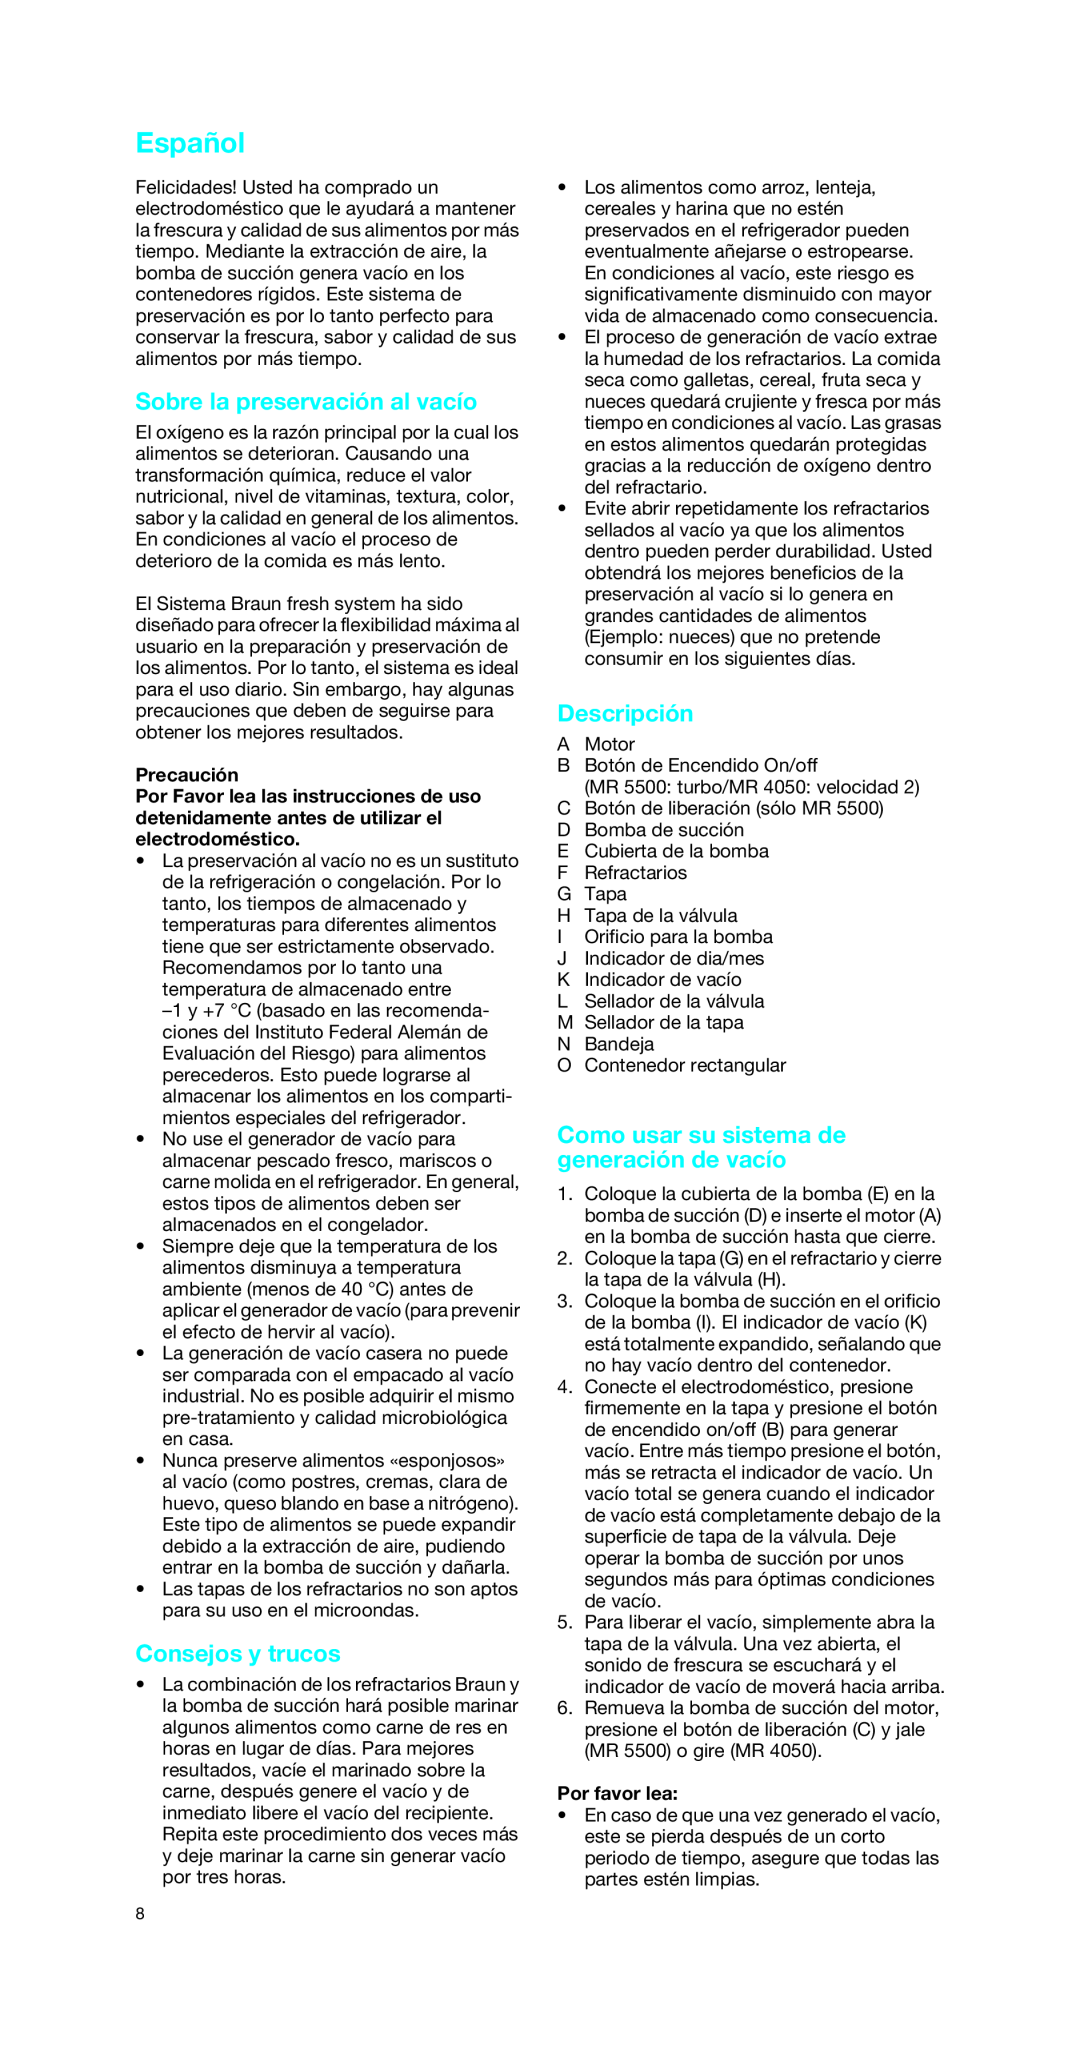 Braun MRV 4050 CA manual Español, Sobre la preservación al vacío, Consejos y trucos, Descripción, Precaución, Por favor lea 